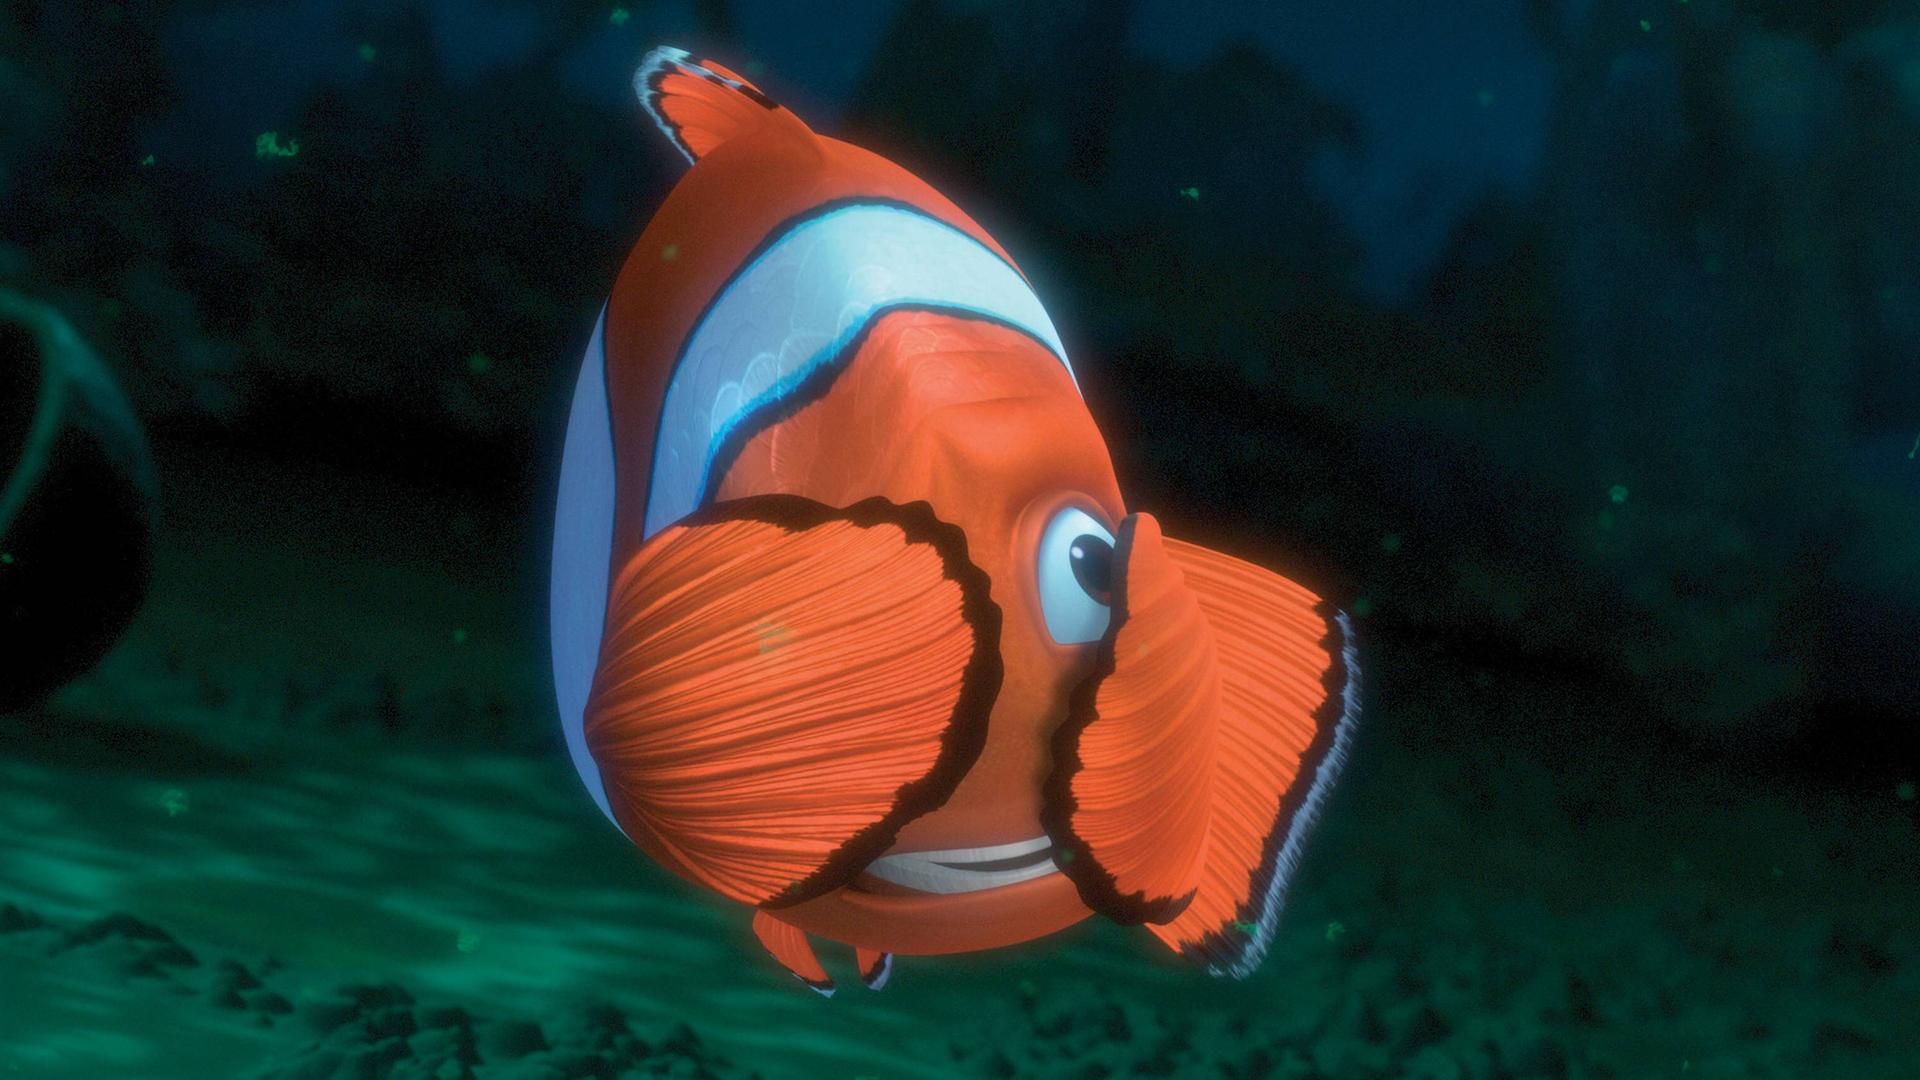 Szenenbild aus dem Film "Findet Nemo". Der Vater von Nemo hält sich mit den Flossen die Augen zu.